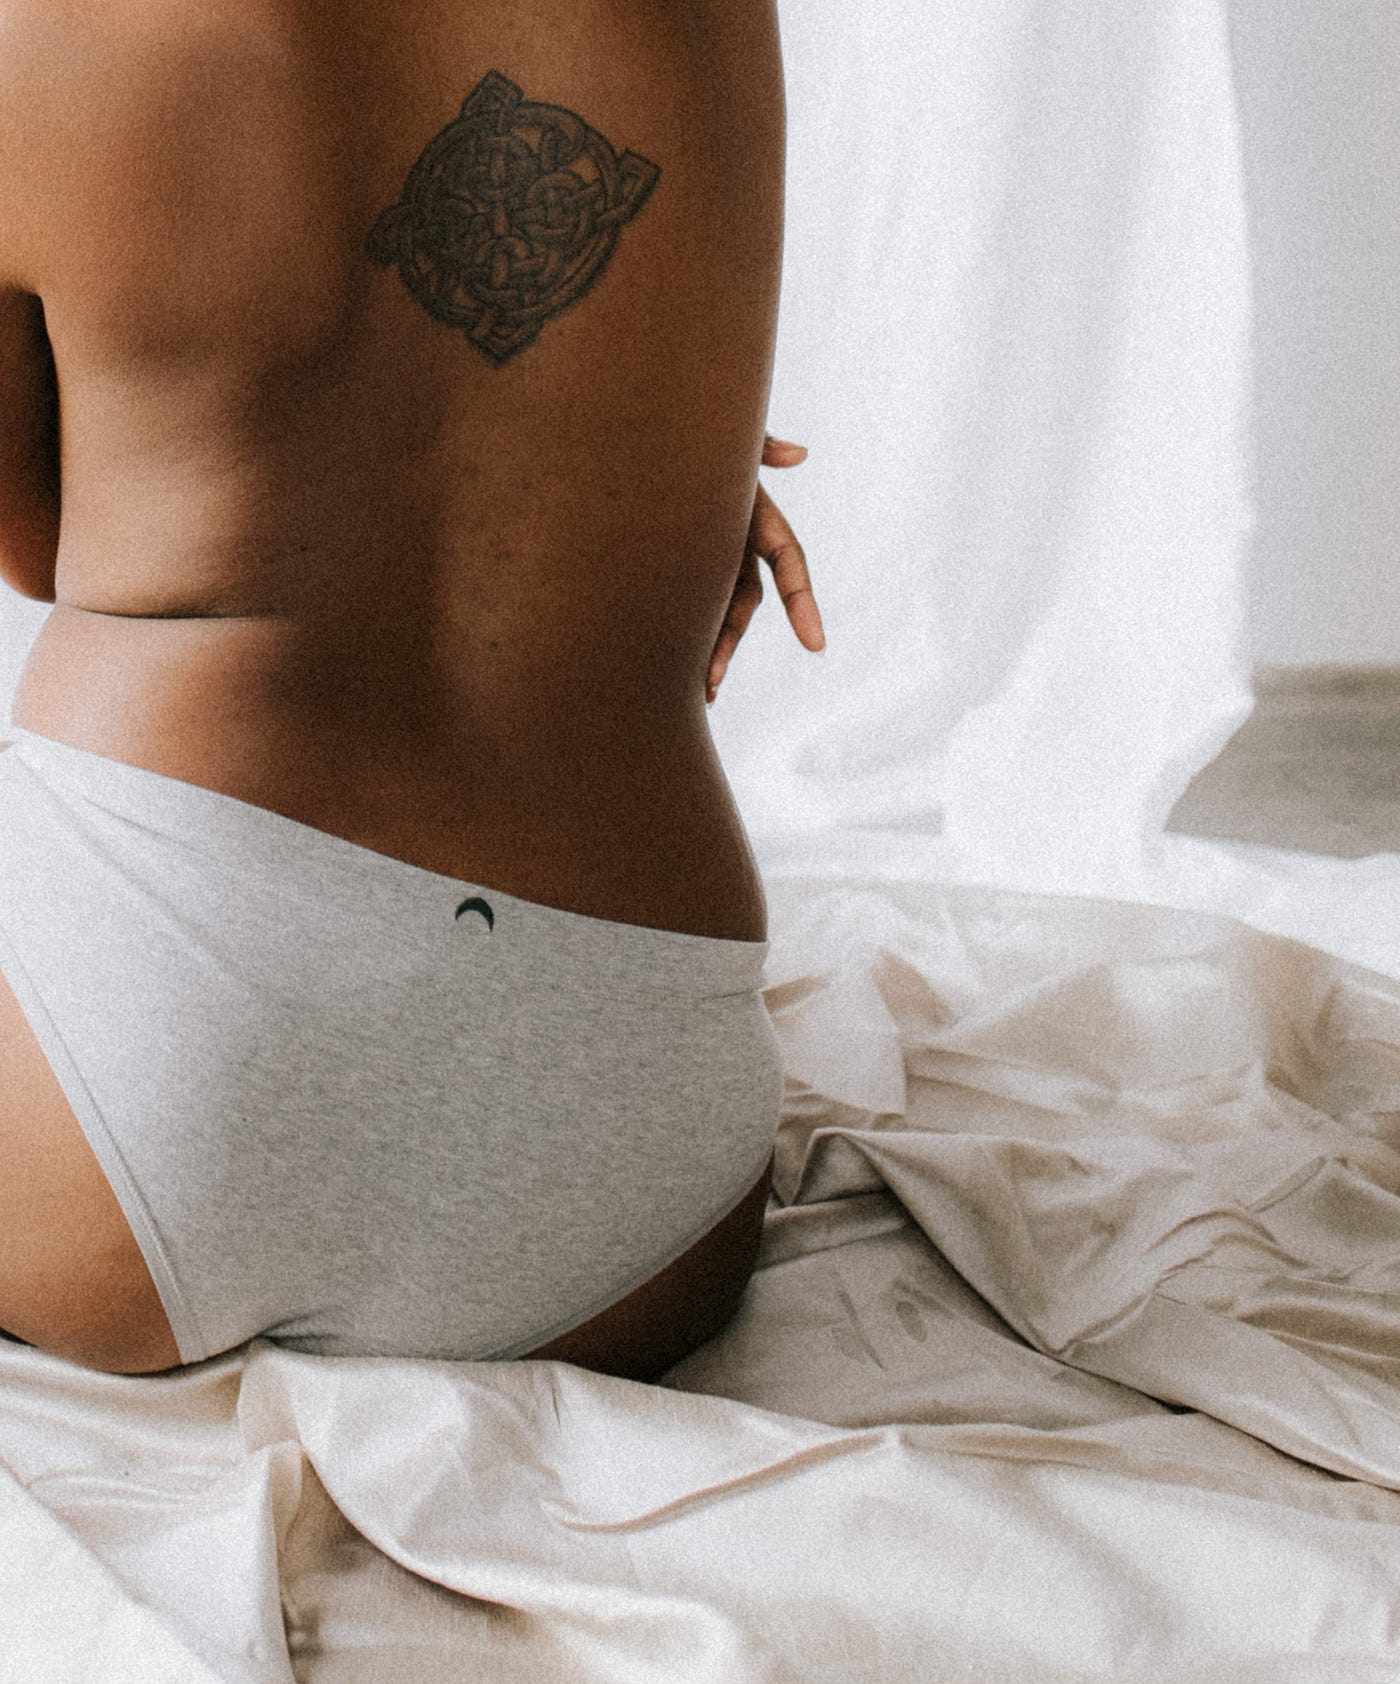 This Period-Proof Underwear Is Breaking Taboos